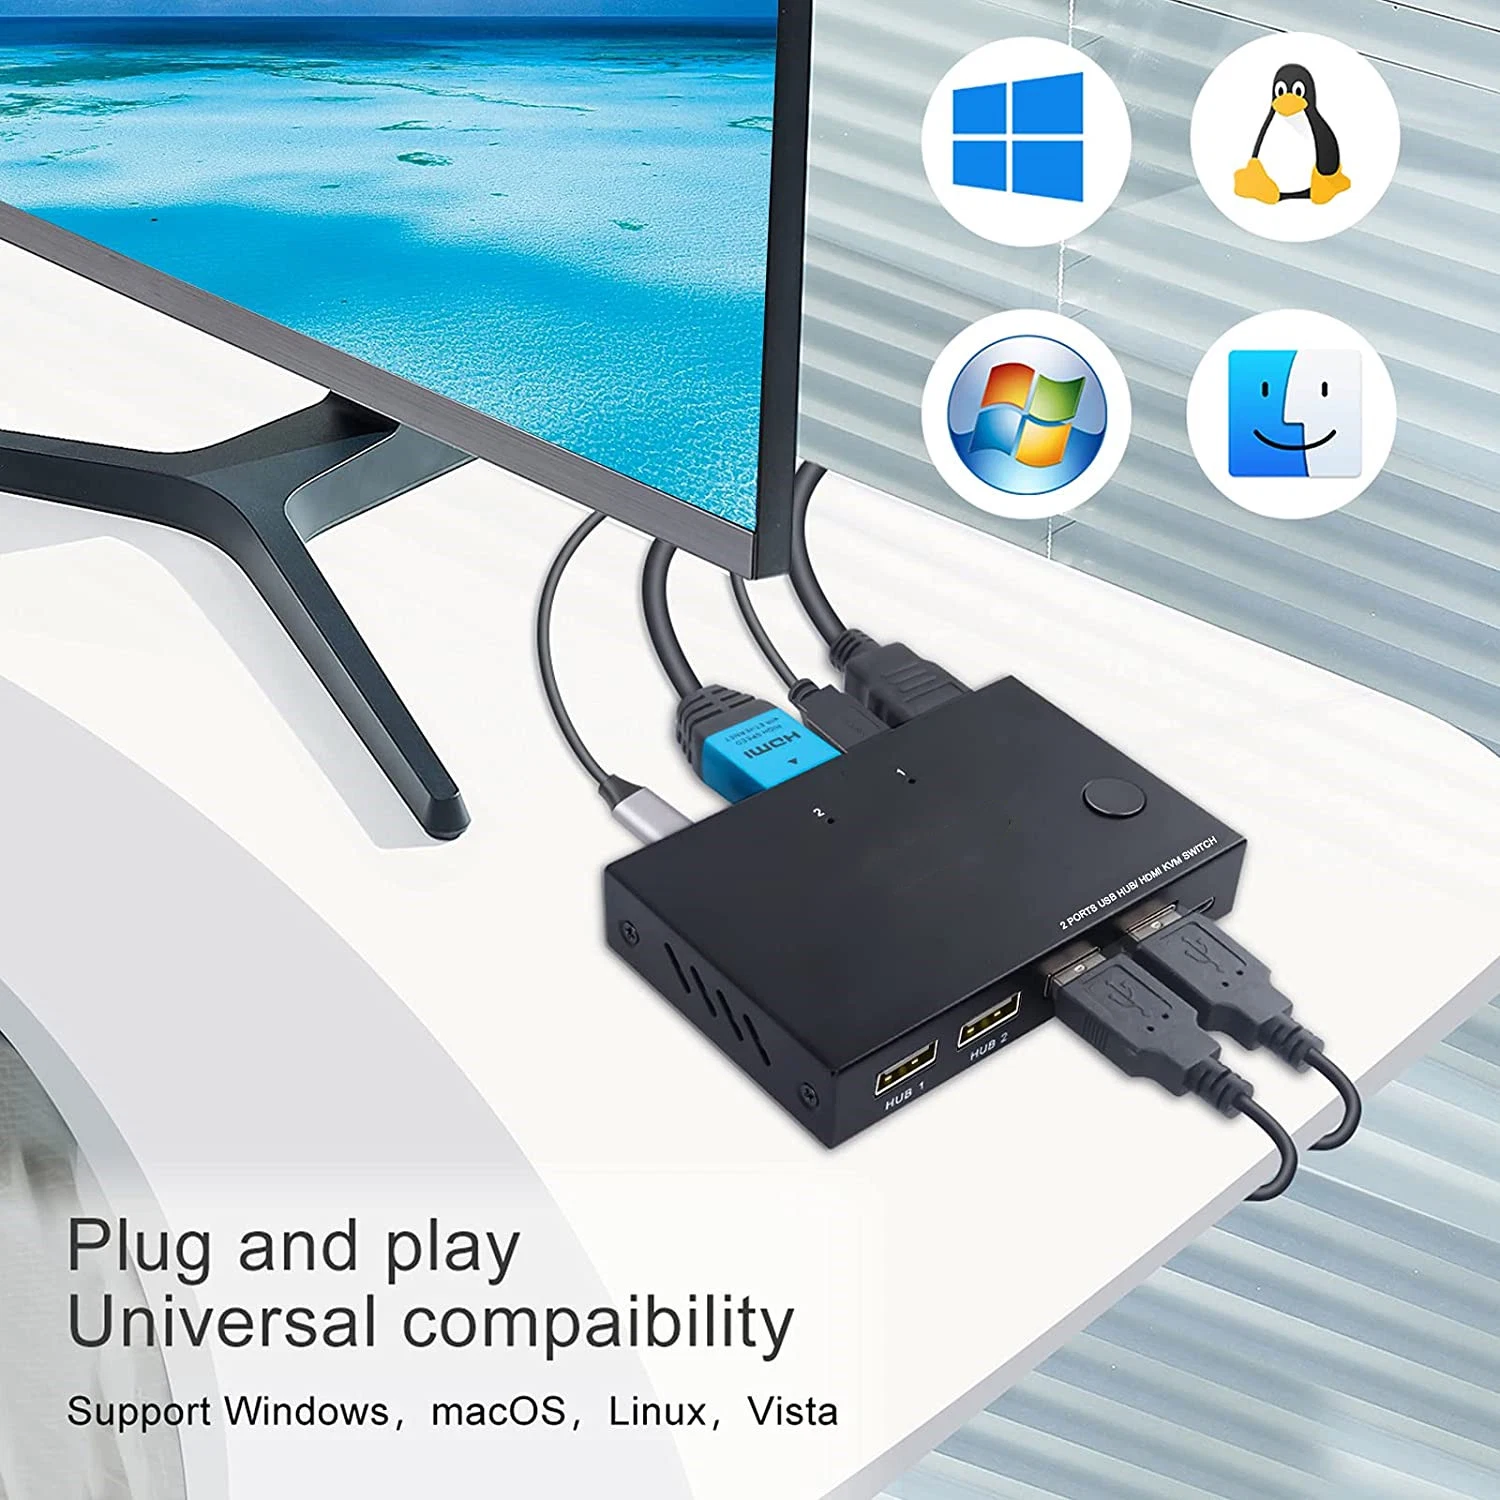 منفذ HDMI 2 لمحول KVM، صندوق تبديل USB، UHD 4K@30 هرتز، 4 محاور USB 2.0، لوحة مفاتيح وماوس لاسلكيين لدعم، كمبيوتر محمول/كمبيوتر شخصي/PS4/Xbox/HDTV متوافق، مع HD